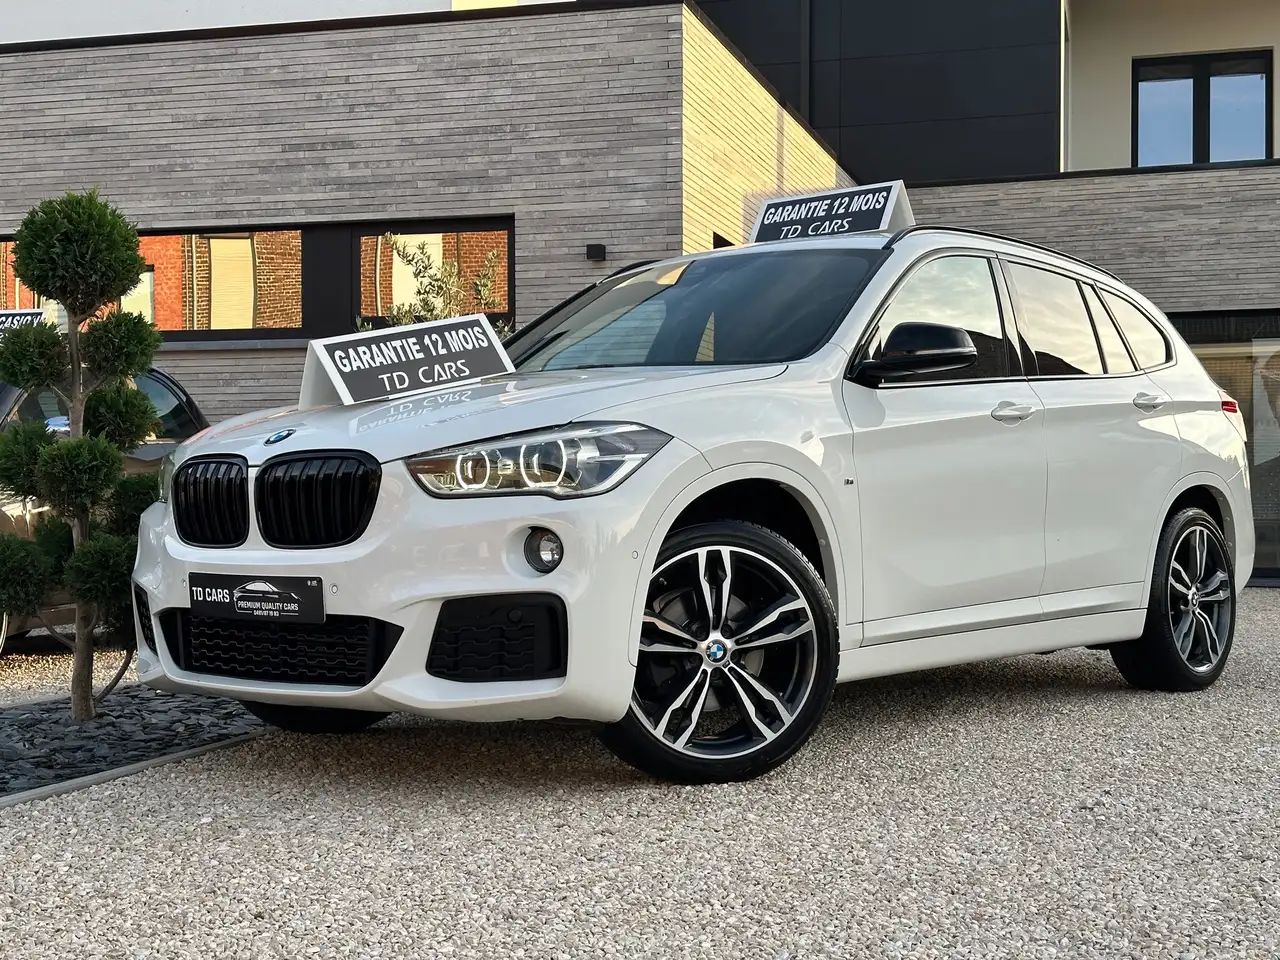 BMW X1 SUV/4x4/Pick-up in Wit tweedehands in Maurage voor € 20.990,-